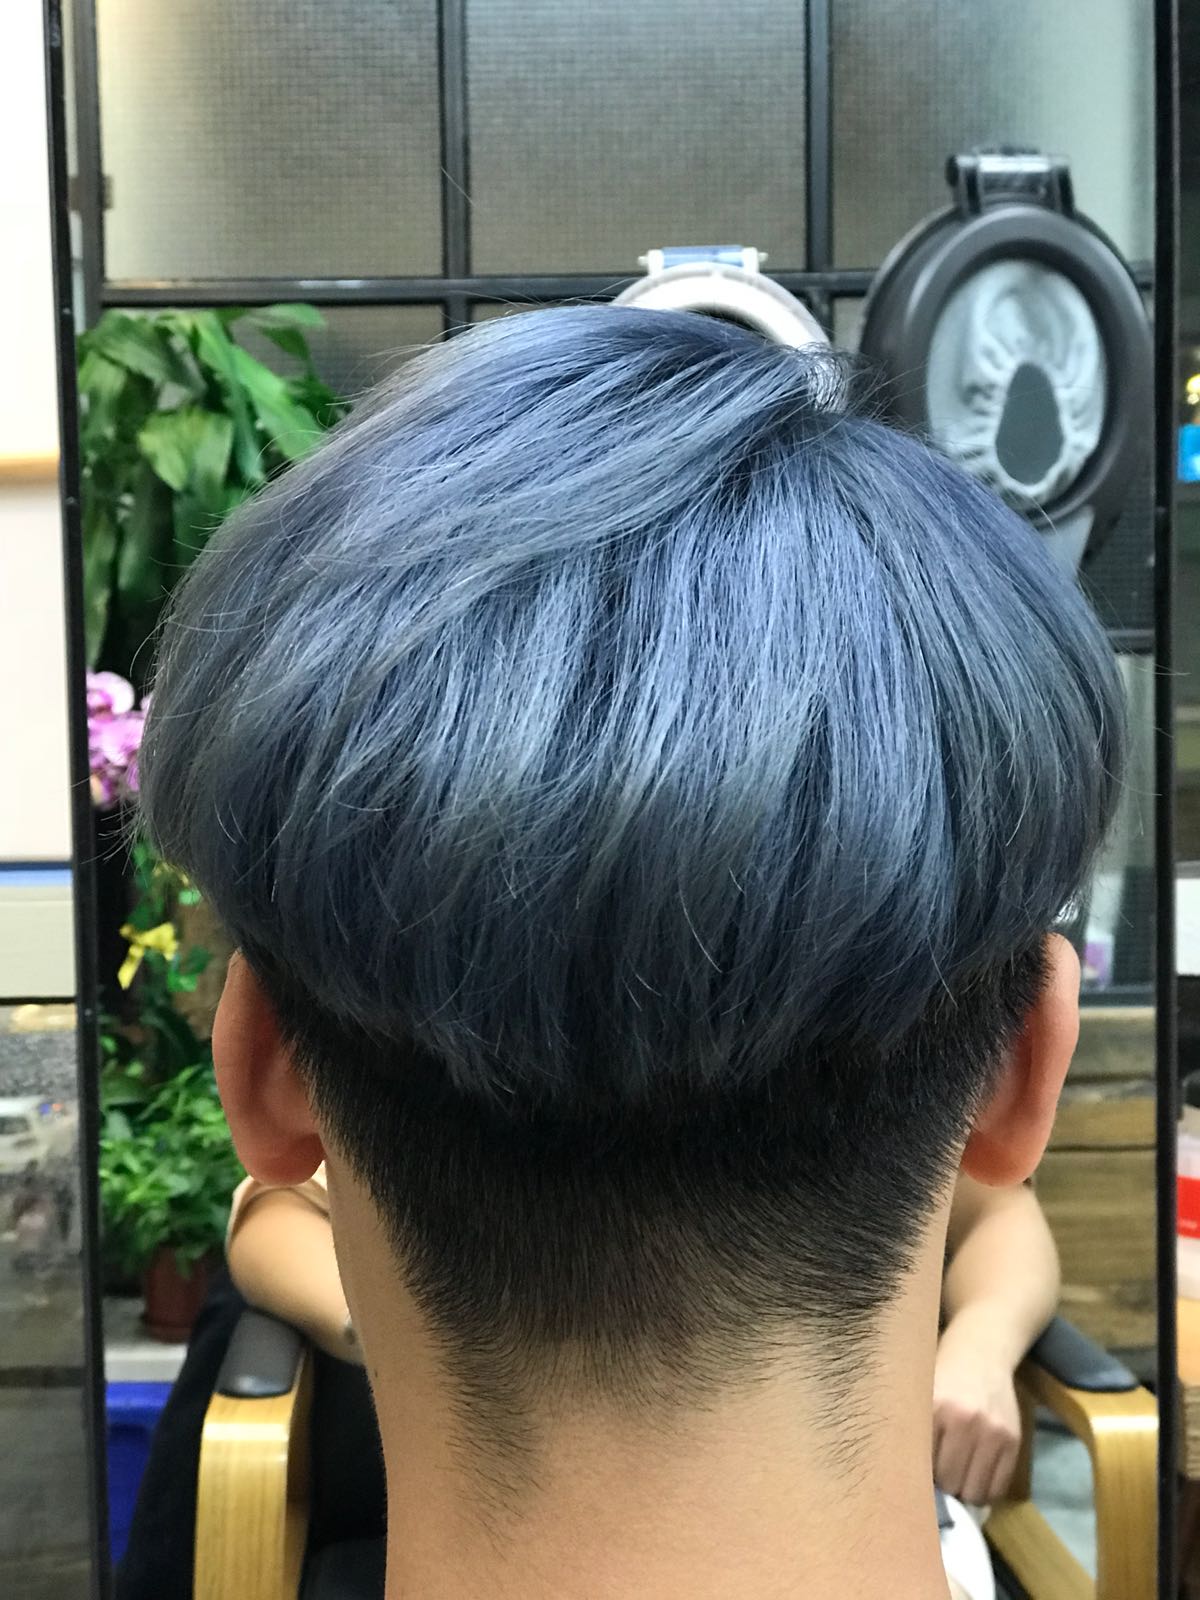 髮型作品參考:灰藍